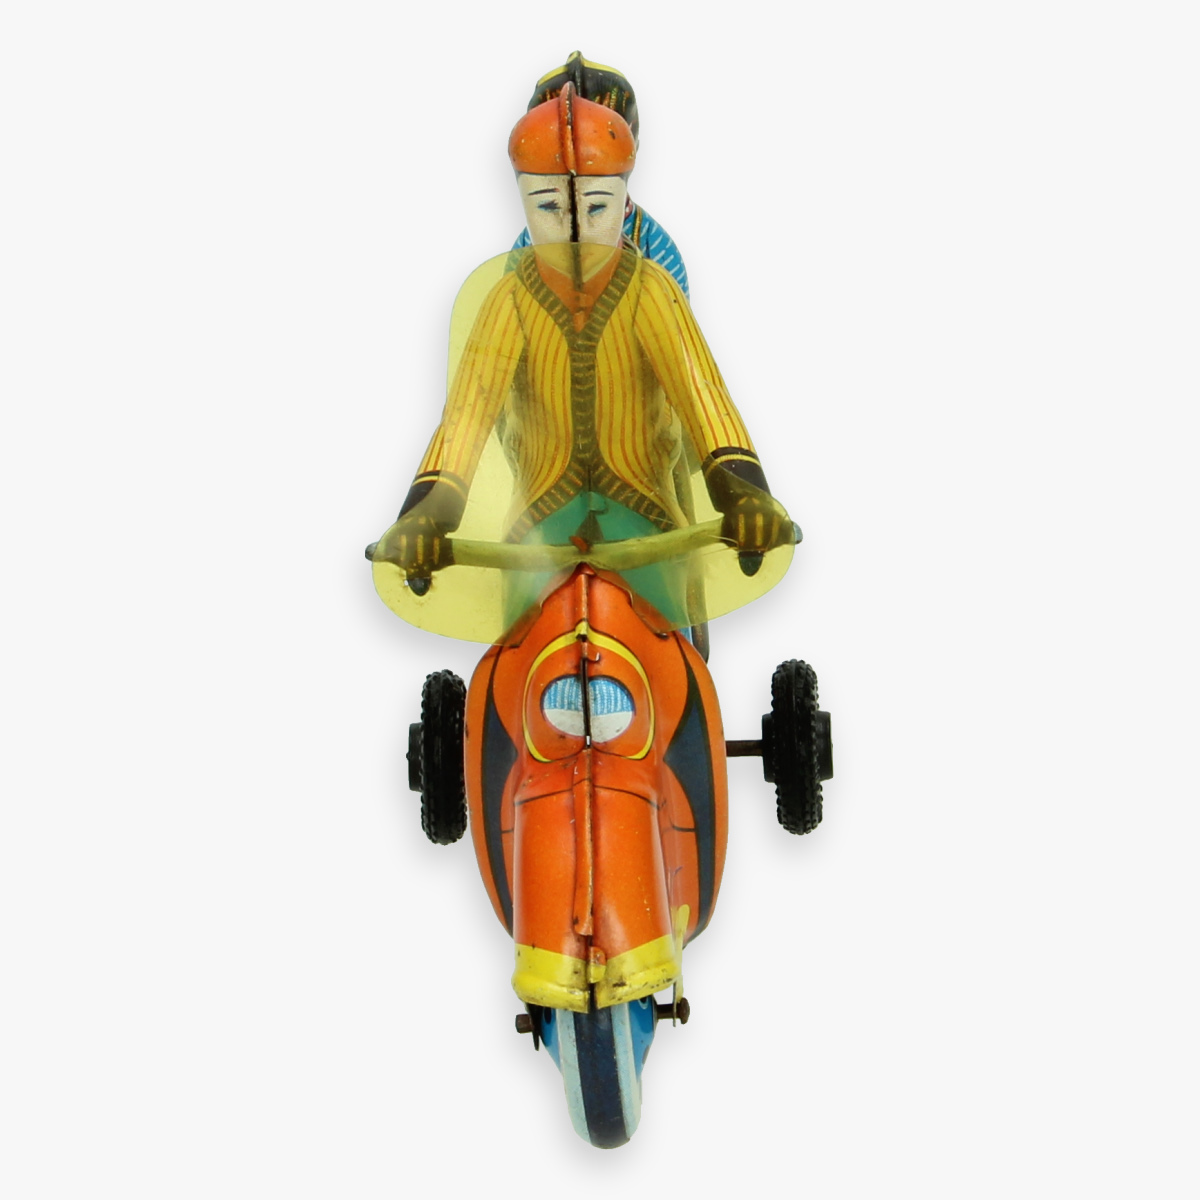 Afbeeldingen van technofix scooter 282 jaren 50 made in western germany zeldzame oranje versie